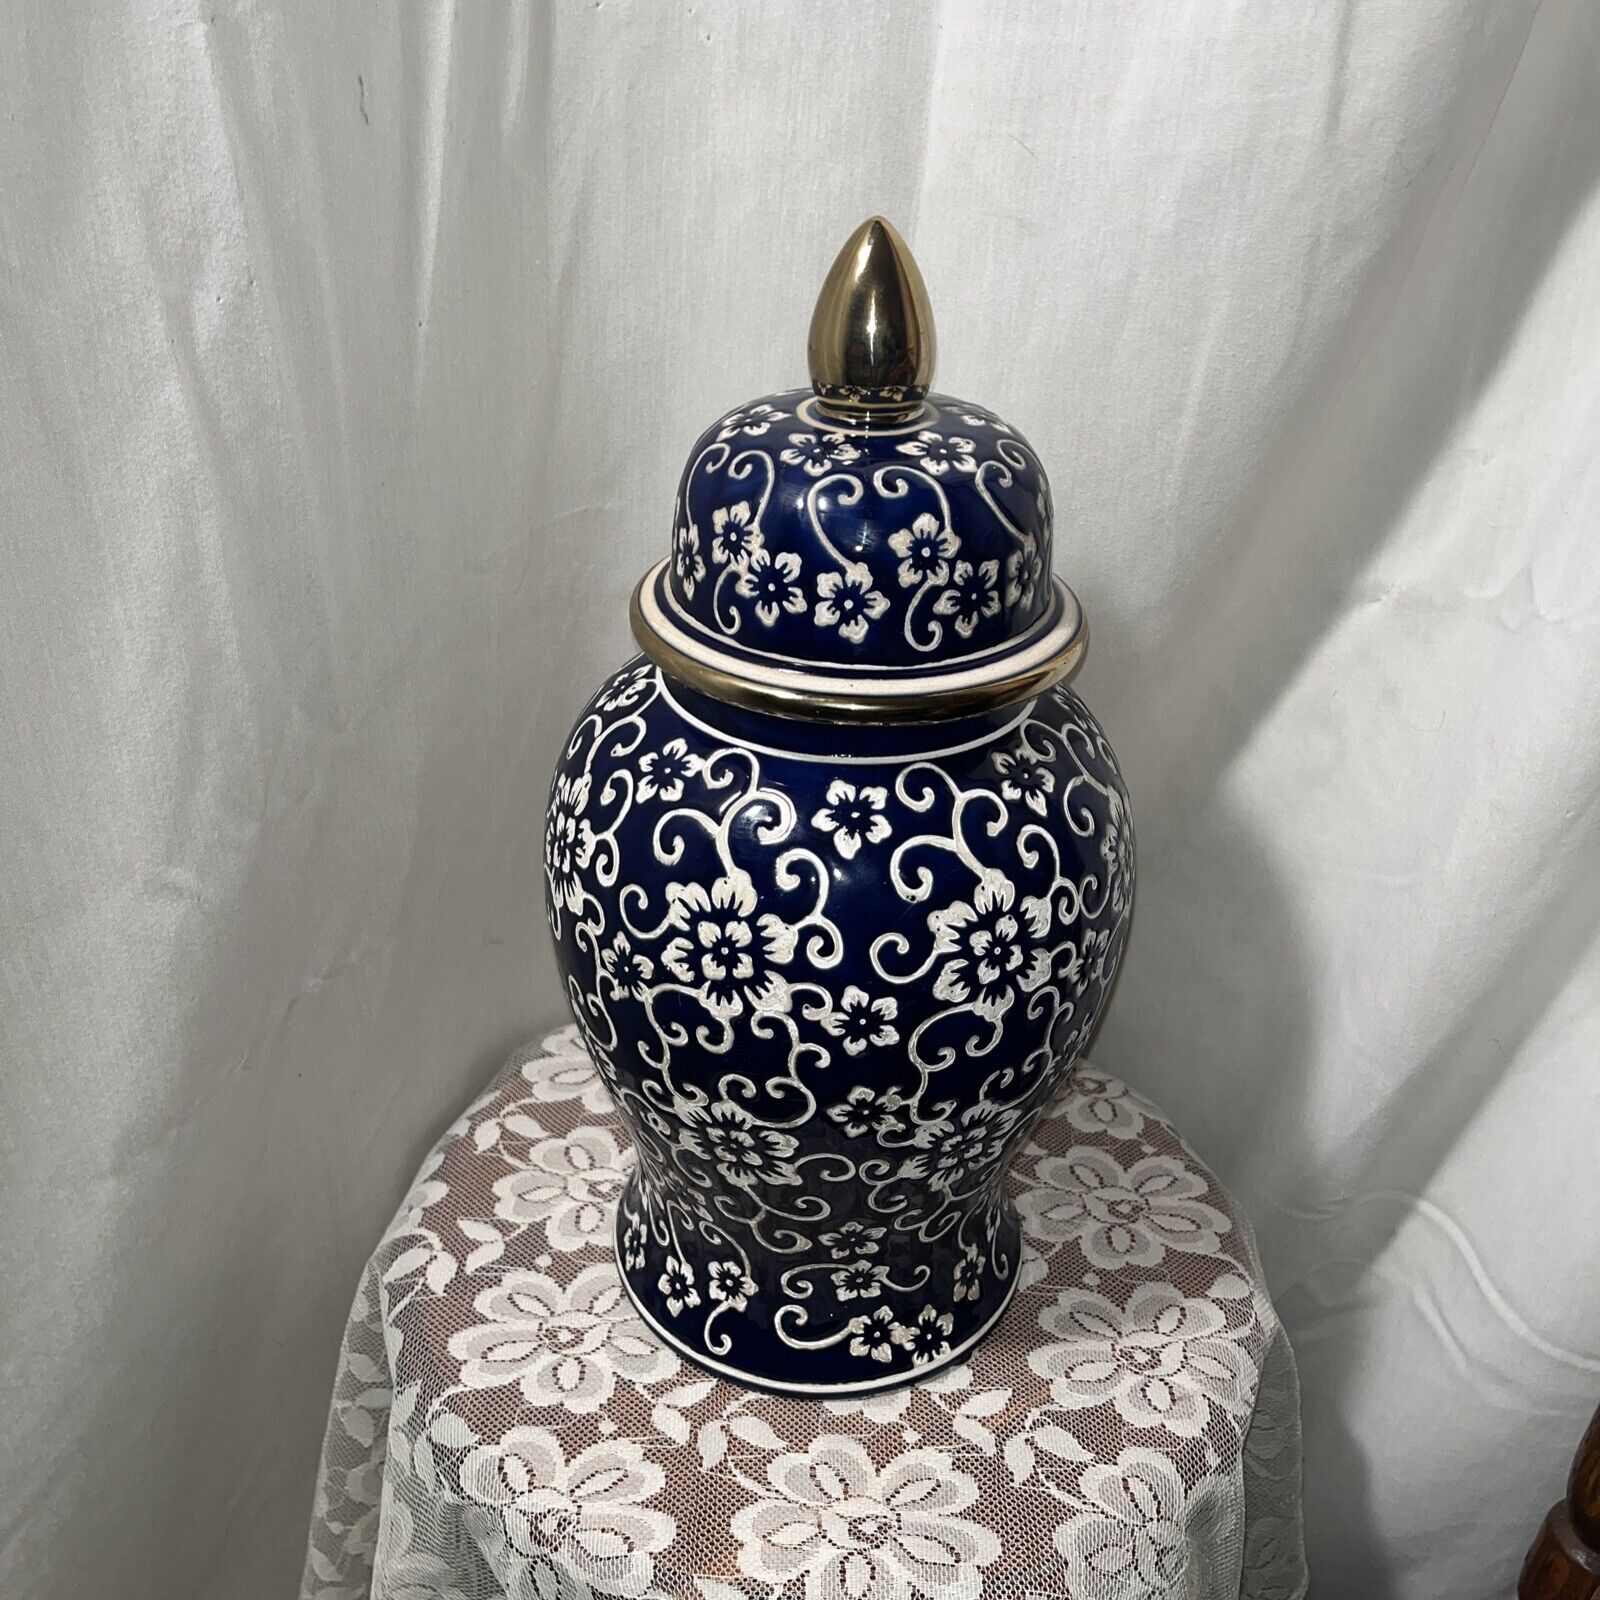 Temple Jar Large Ginger Jar 14” Blue White Gold Floral Textured 